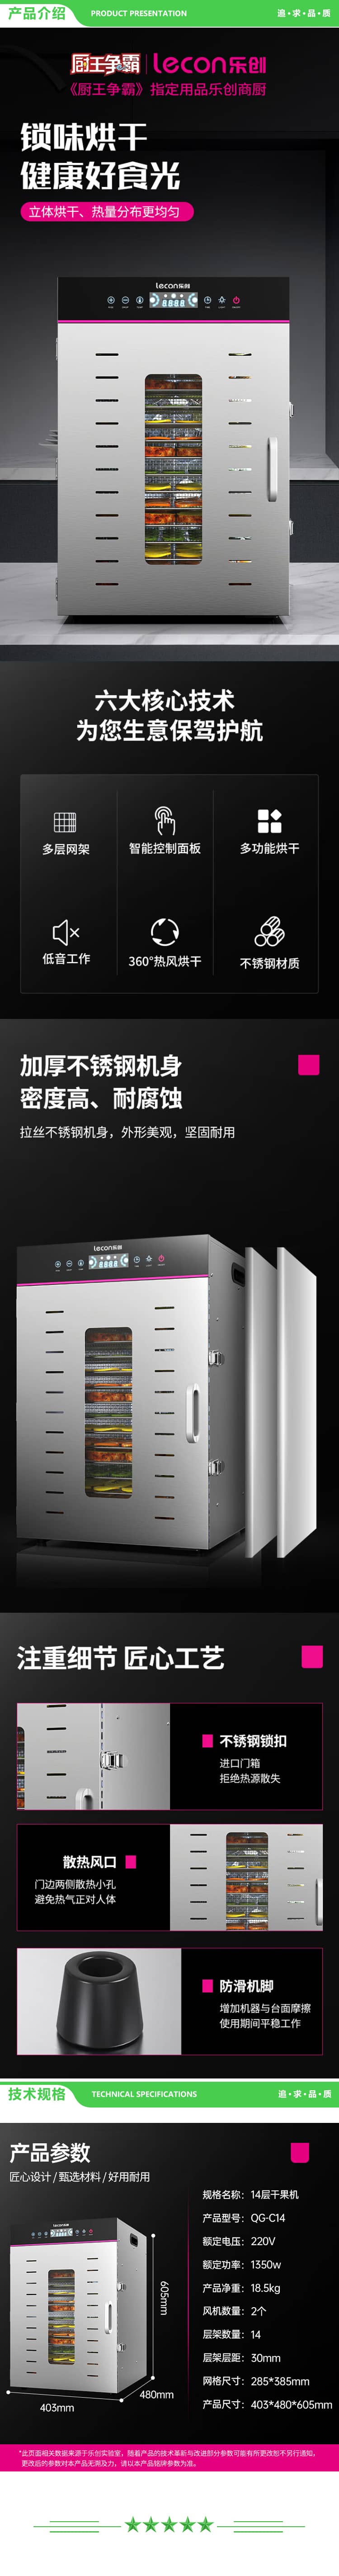 乐创 lecon QG-C14 干果机商用食品药材水果烘干机不锈钢蔬菜风干机14层干果机 2.jpg